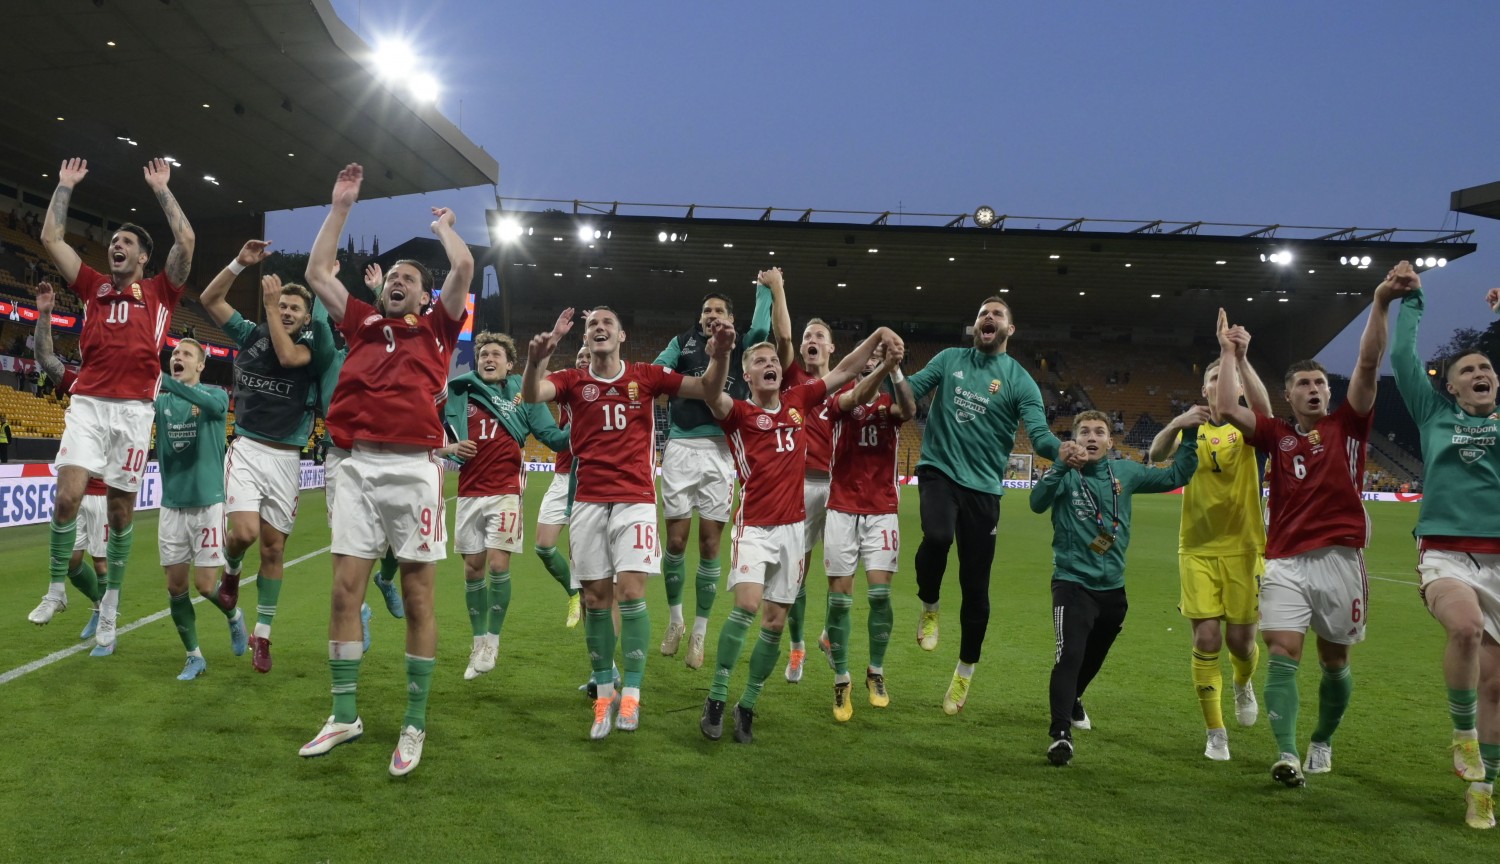 Fokozhatatlan NL-álom: négygólos győzelem Angliában, csoportja élén a magyar válogatott